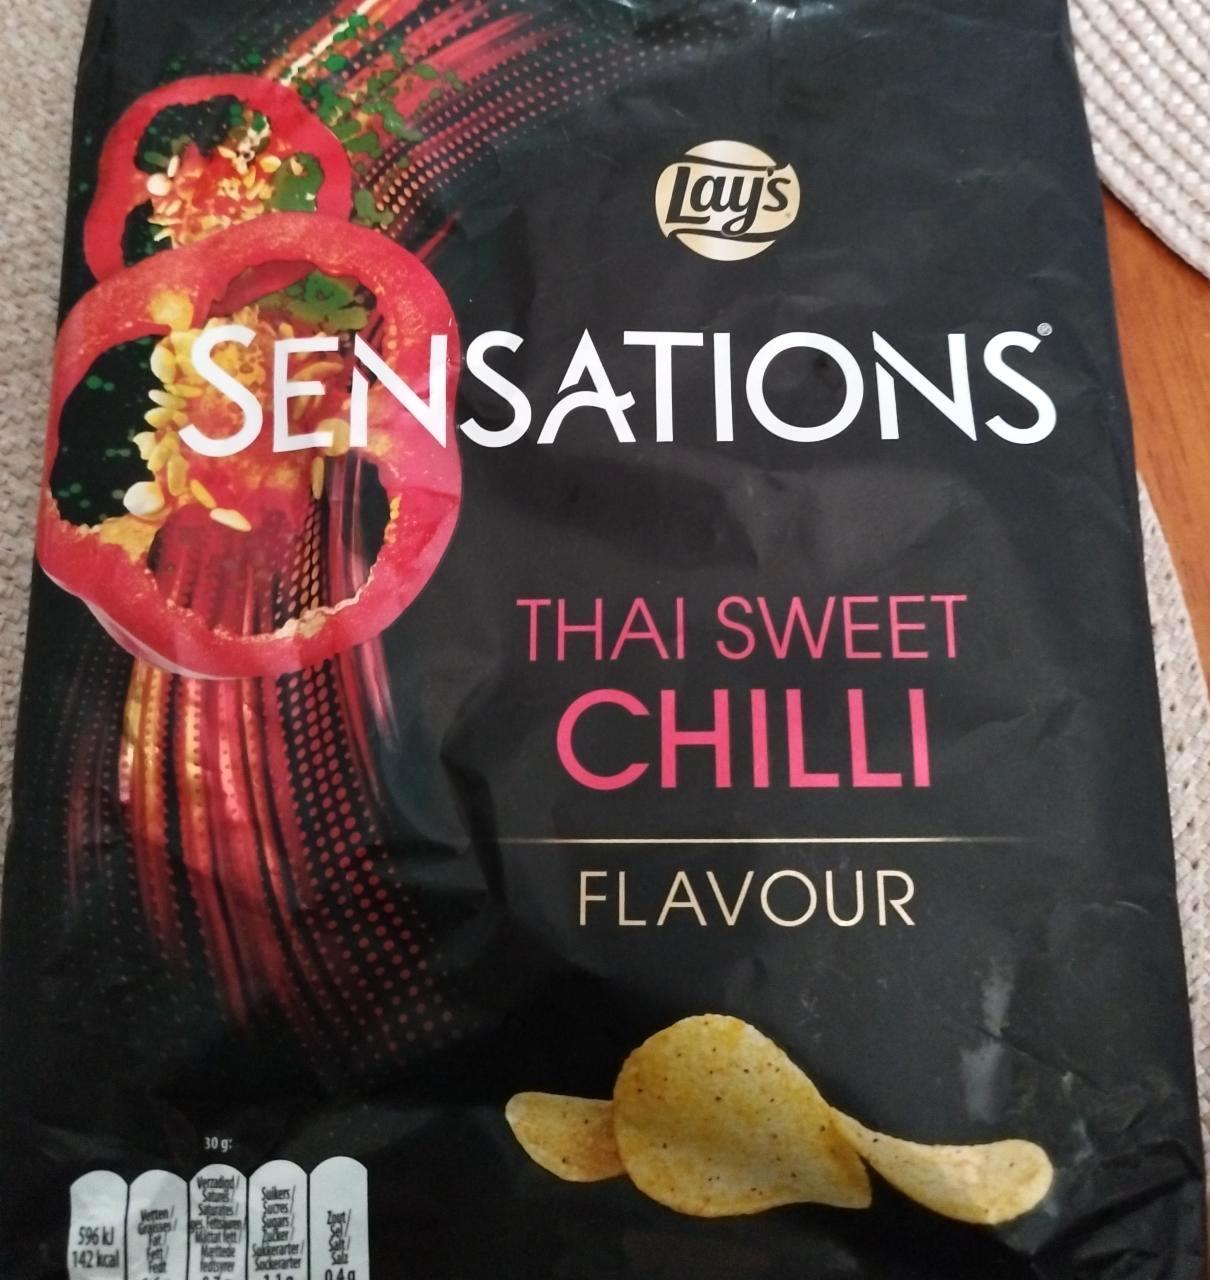 Képek - Lay's Sensations Thai sweet chilli flavour